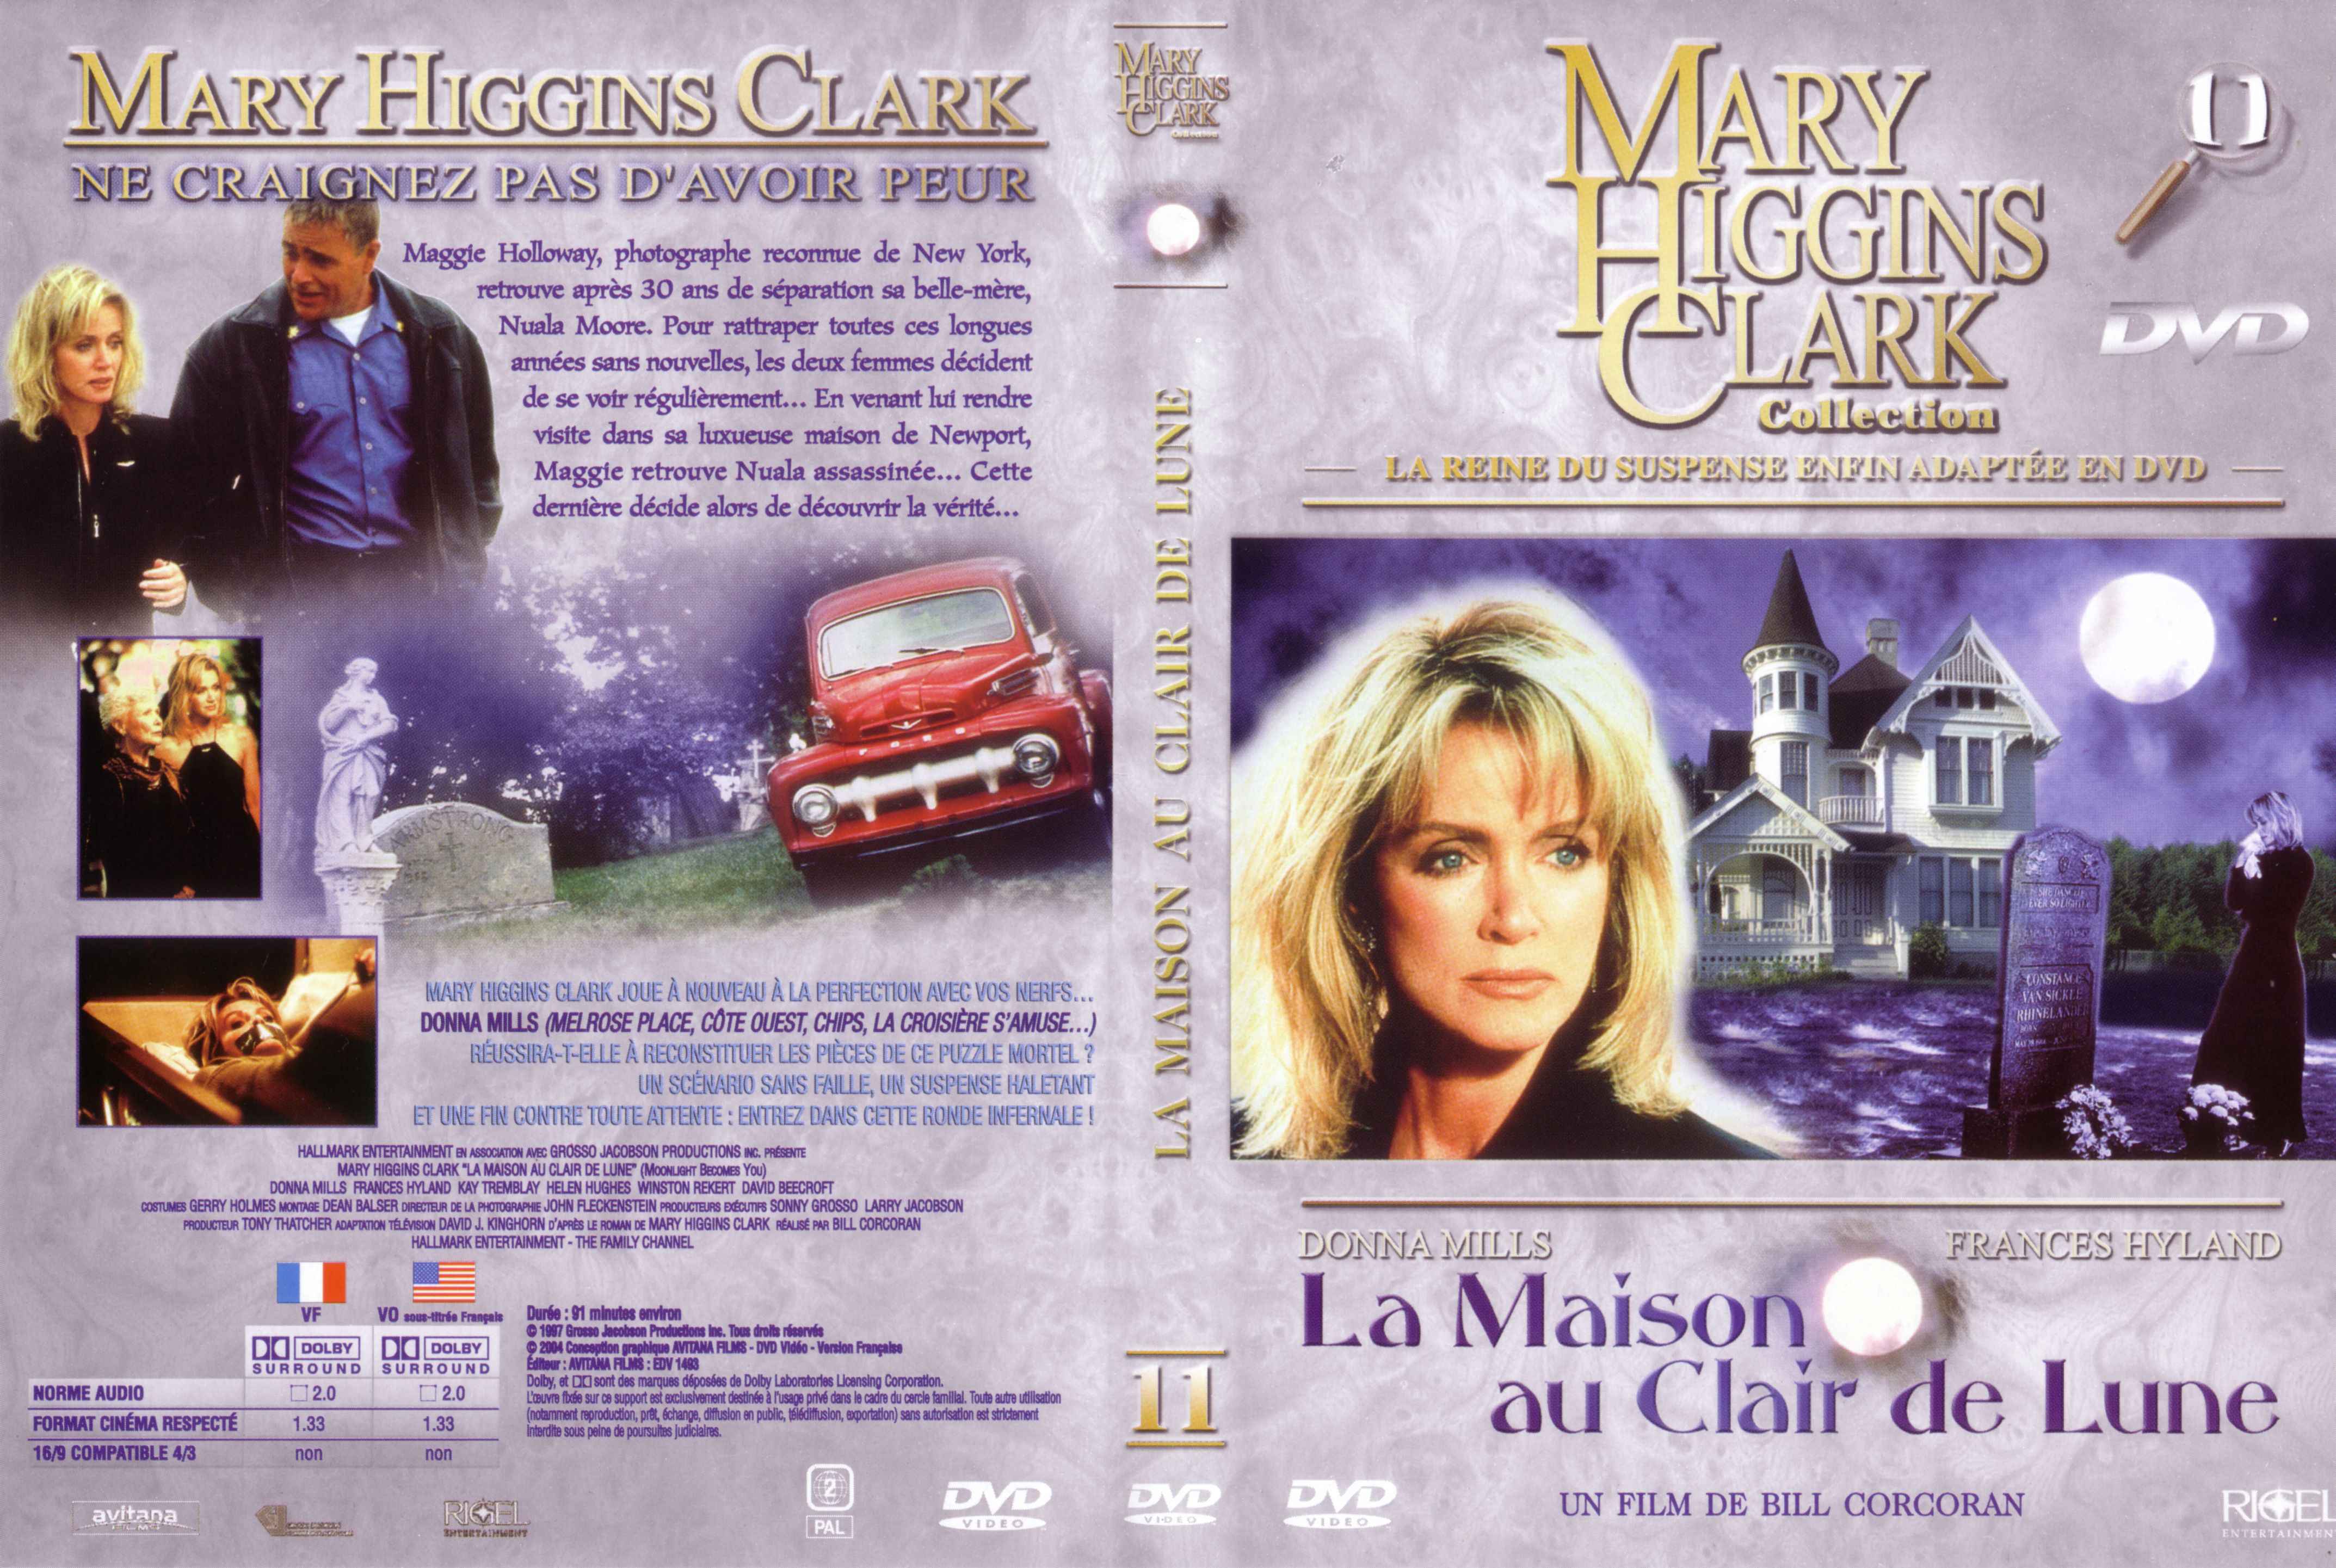 Jaquette DVD Mary Higgins Clark vol 11 - La maison au clair de lune